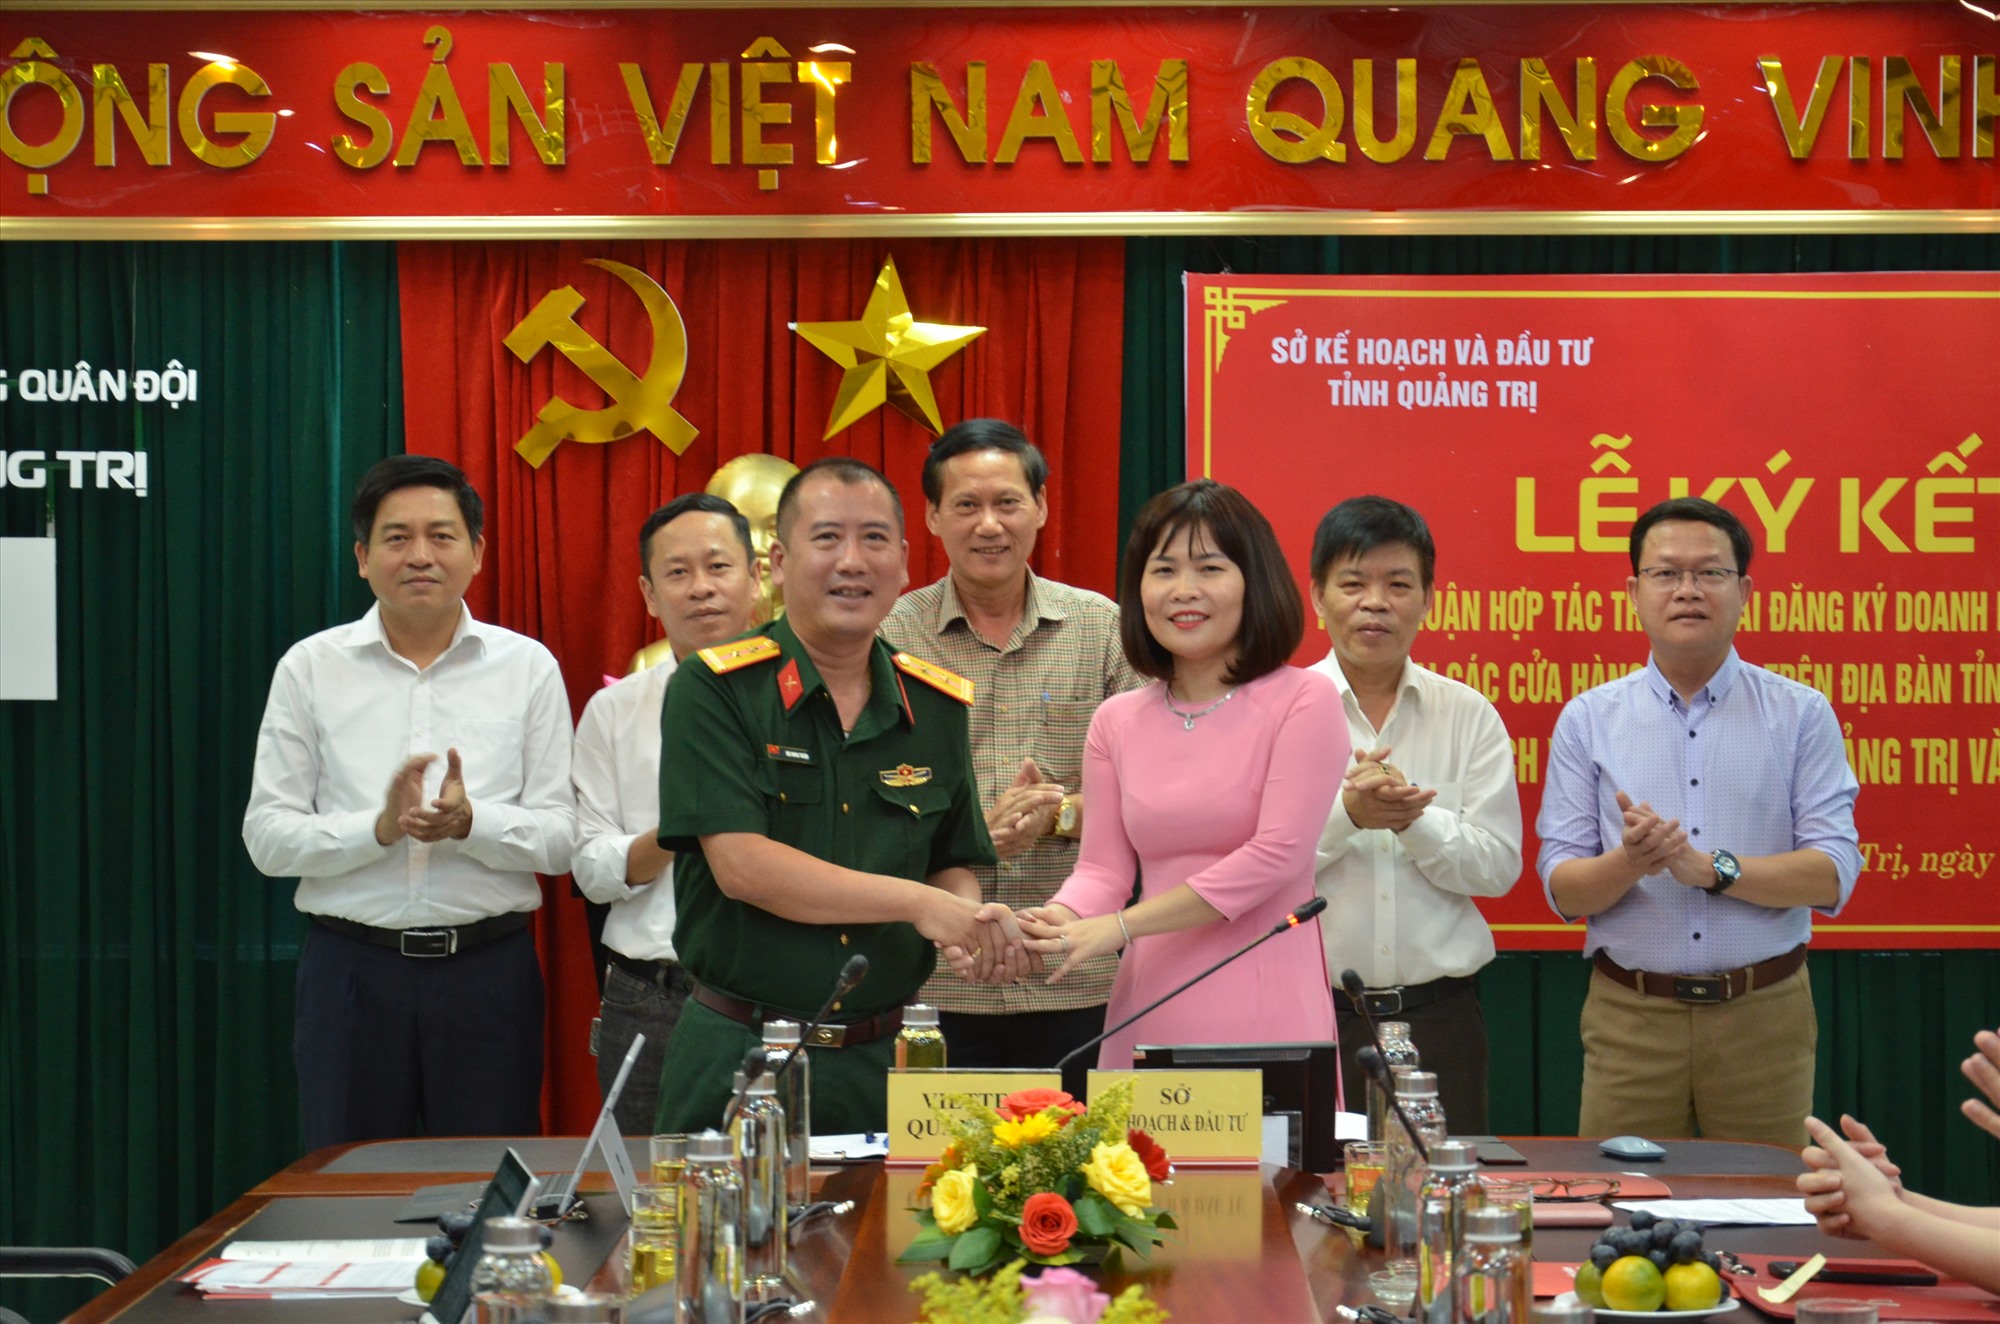 Lãnh đạo Sở Kế hoạch và Đầu tư và Viettel Quảng Trị ký kết thoản thuận hợp tác triển khai thí điểm đăng ký doanh nghiệp qua mạng - Ảnh: Lê Minh